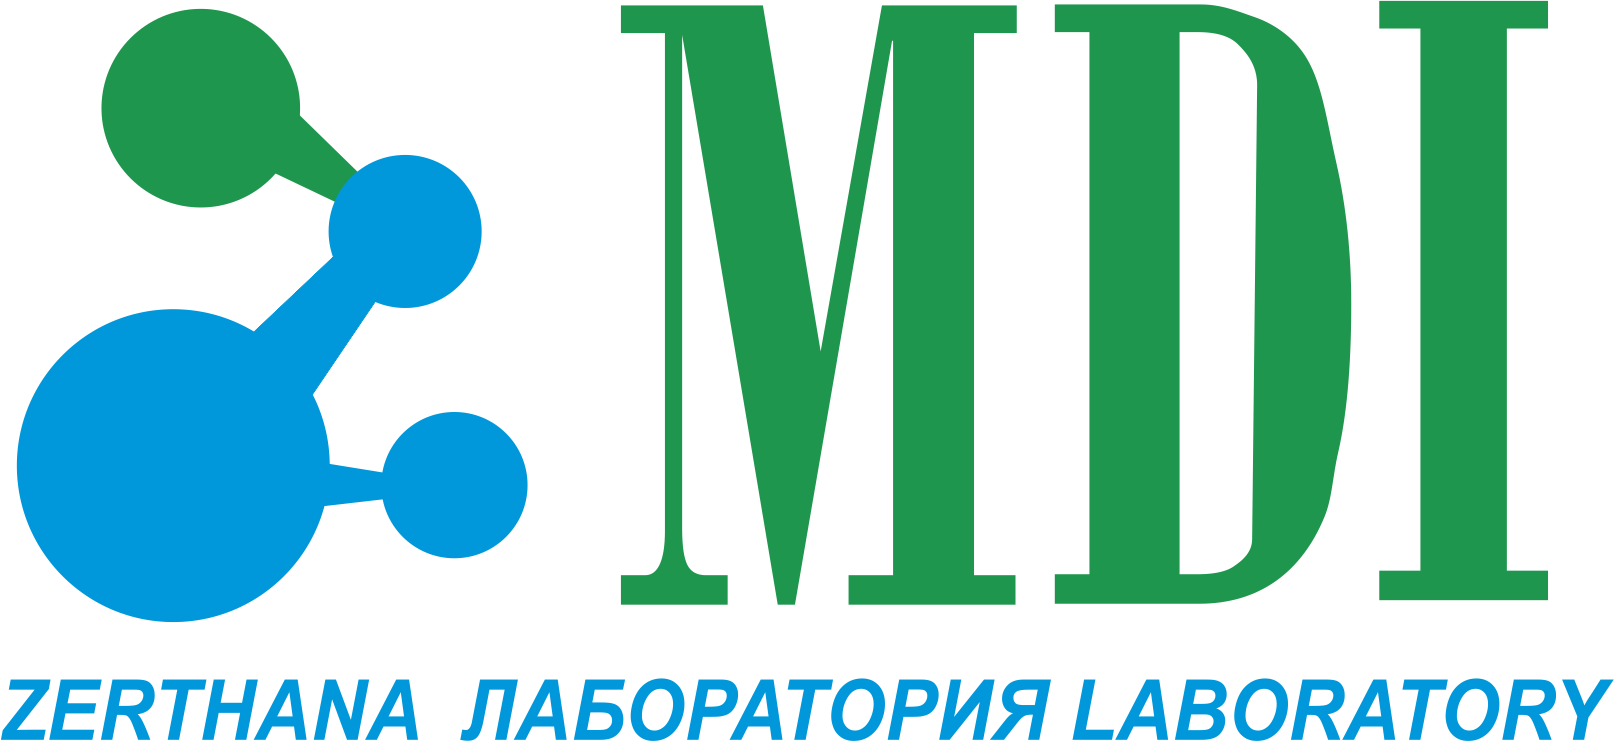 логотип лаборатории mdi.kz